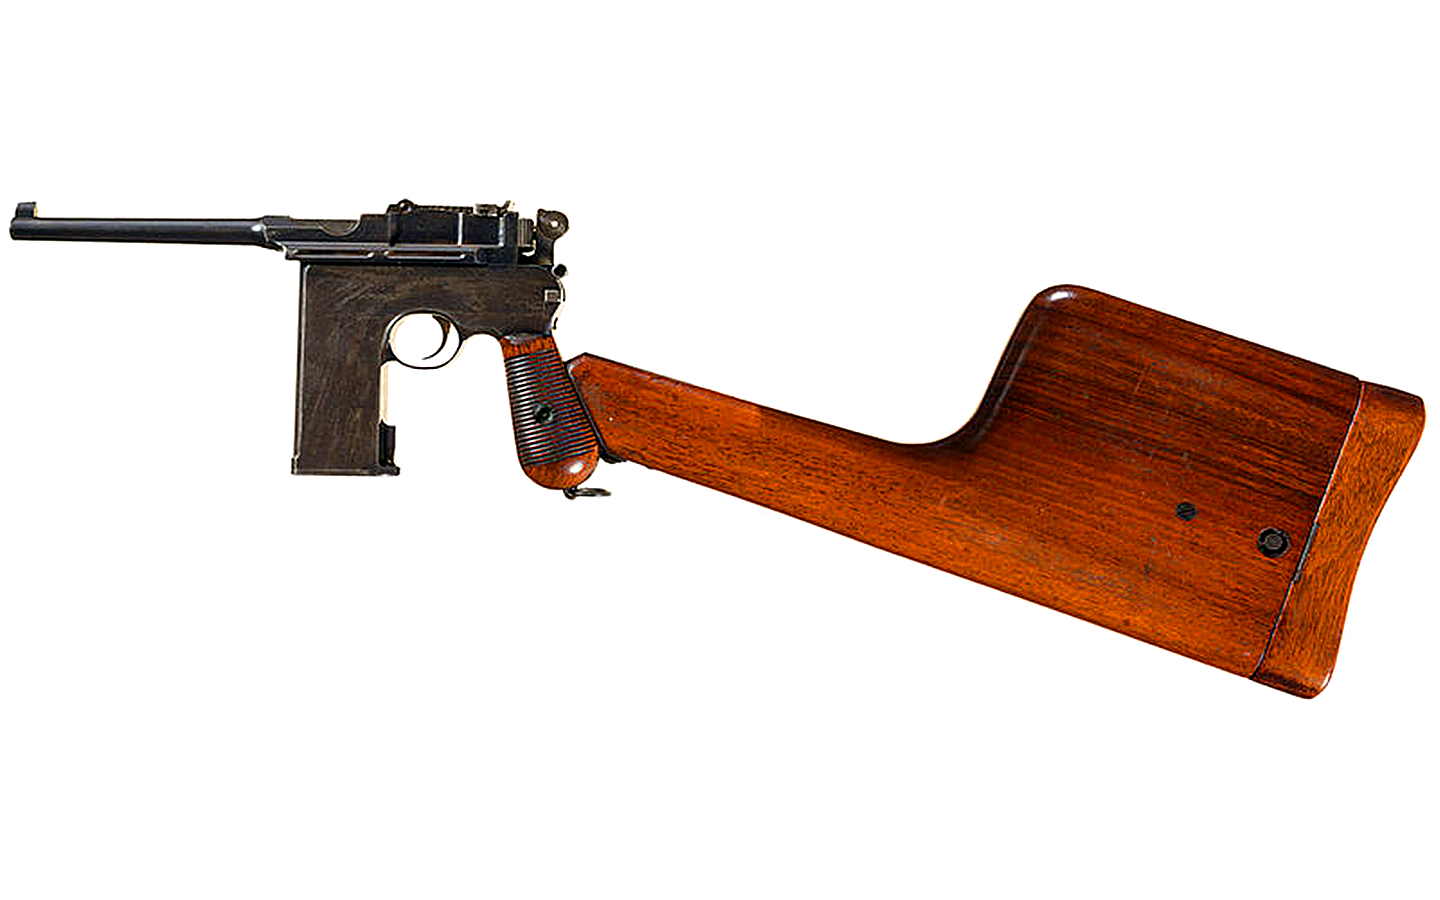 该枪由德国奥伯恩多夫-毛瑟有限公司生产,毛瑟厂在1895年12月11日